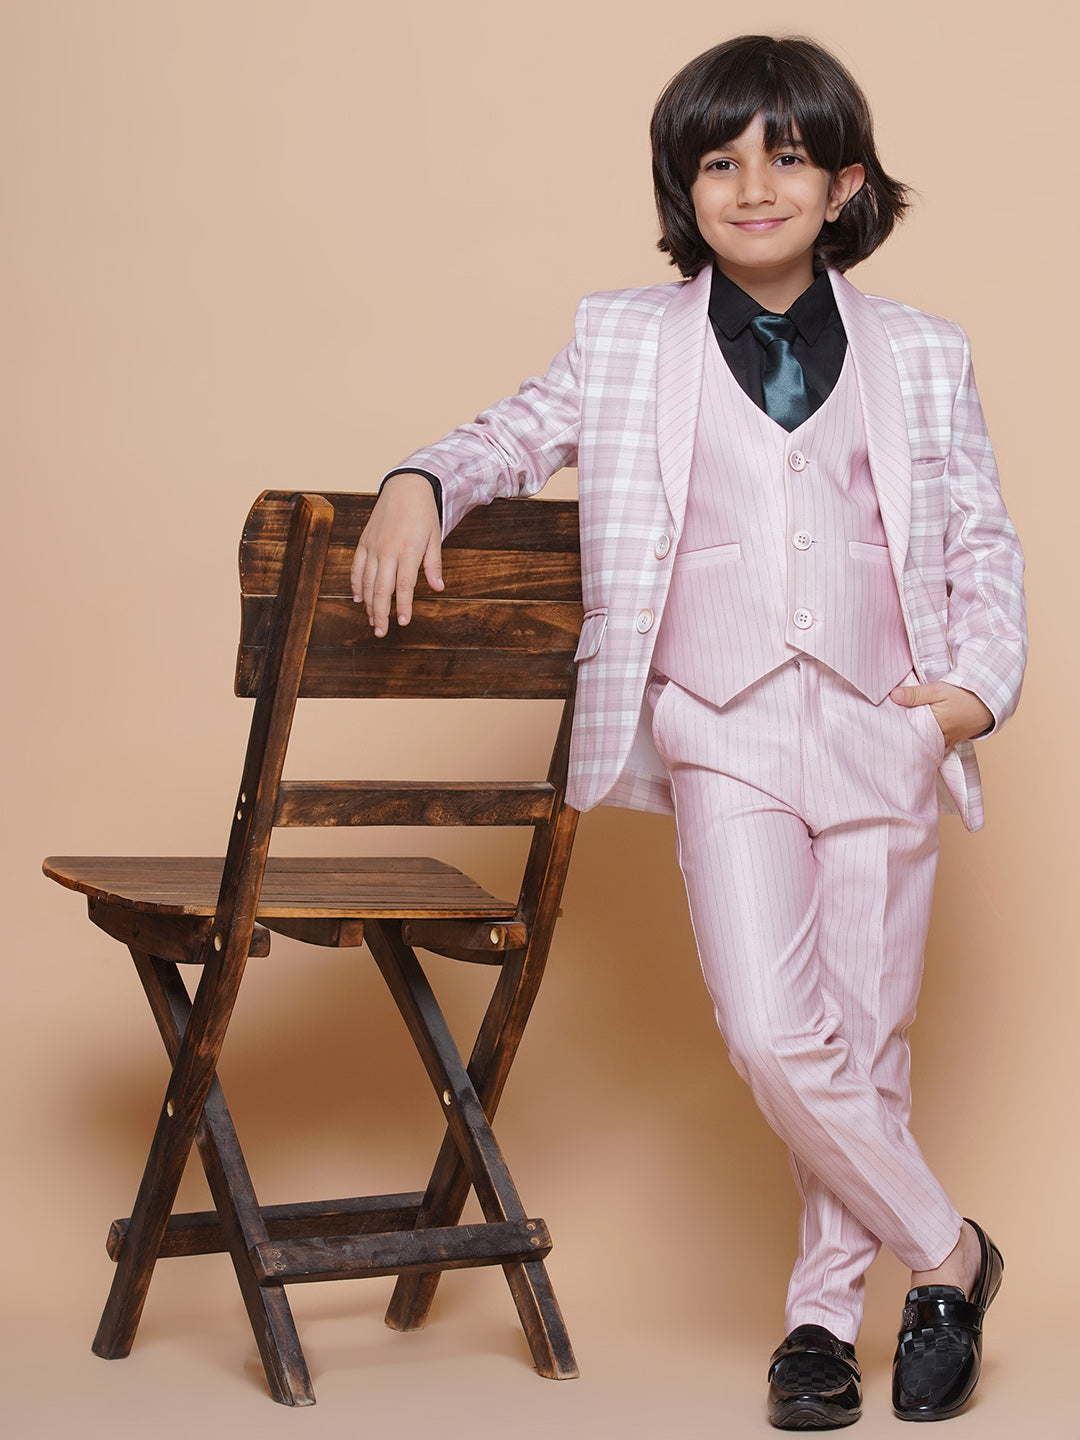 Boys Kids Check Pink Cotton Blend Suit Set